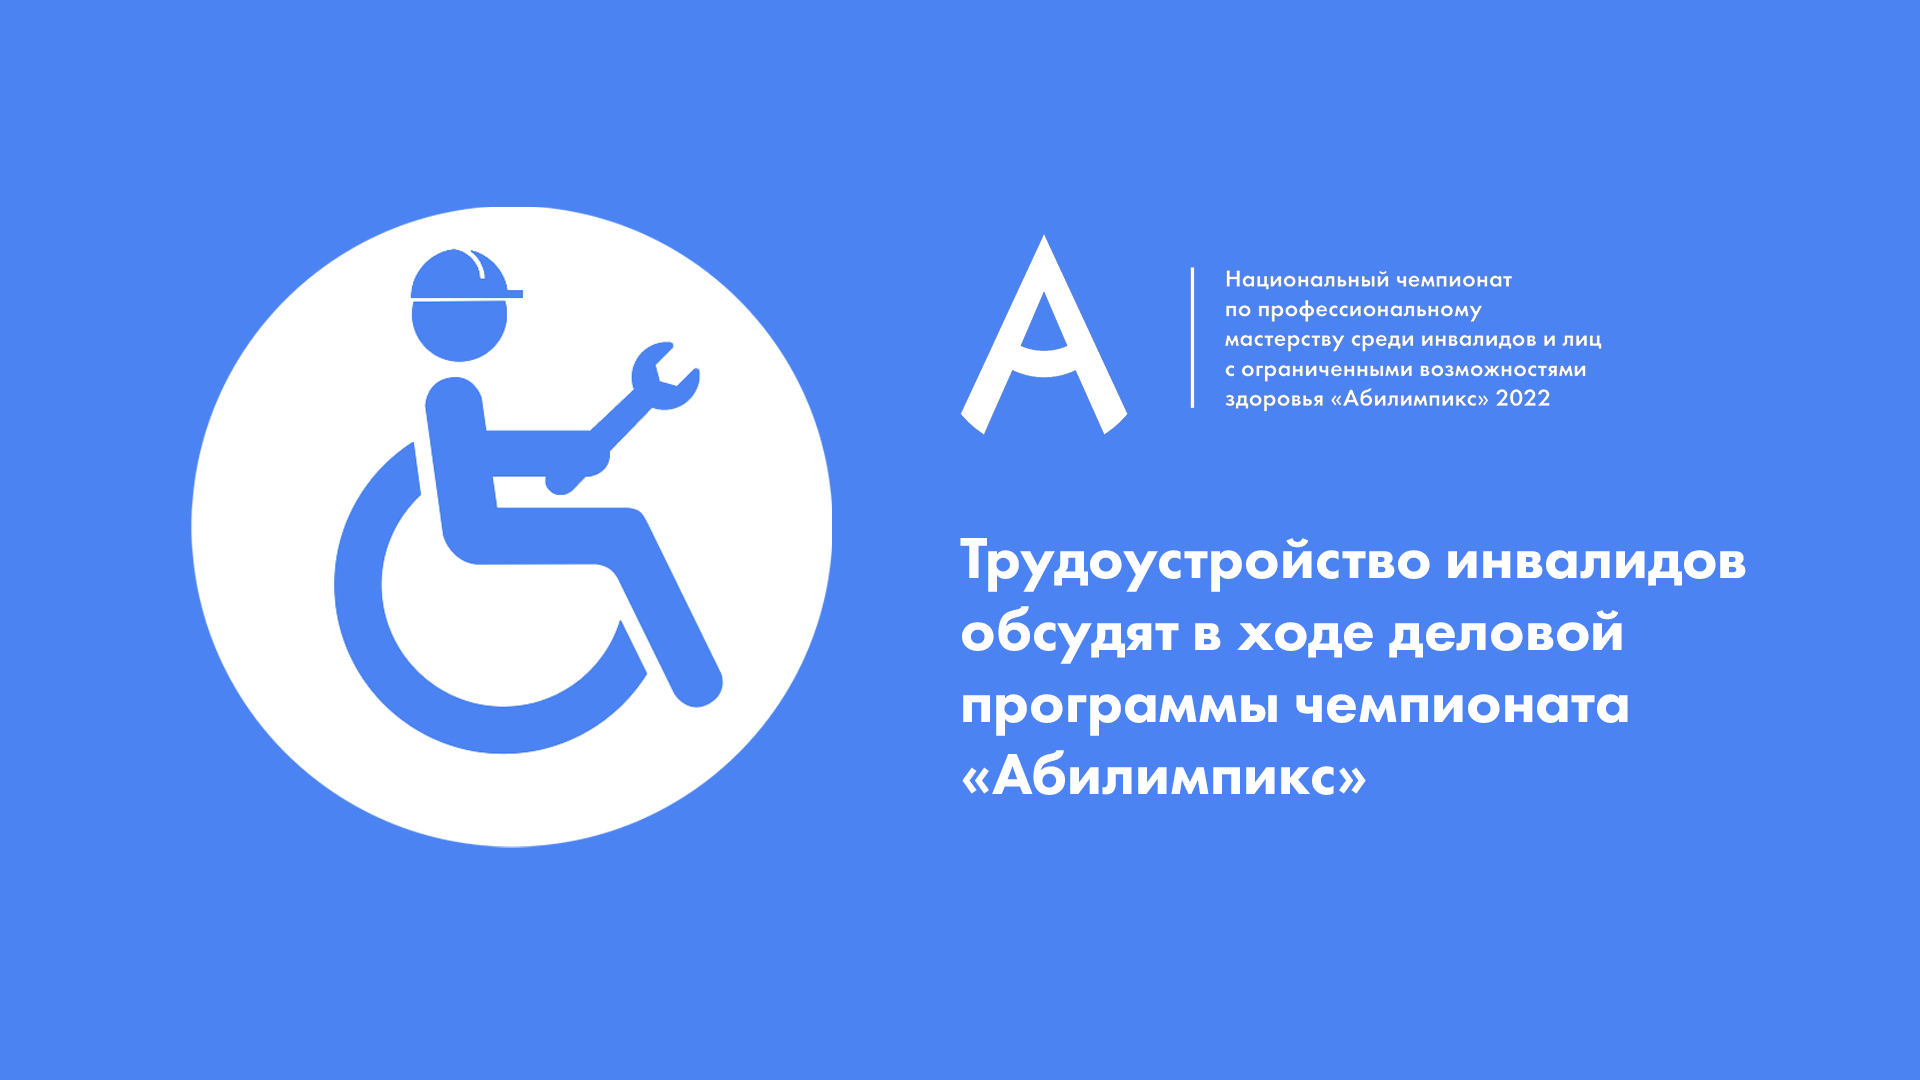 Трудоустройство инвалидов обсудят в ходе деловой программы чемпионата «Абилимпикс»